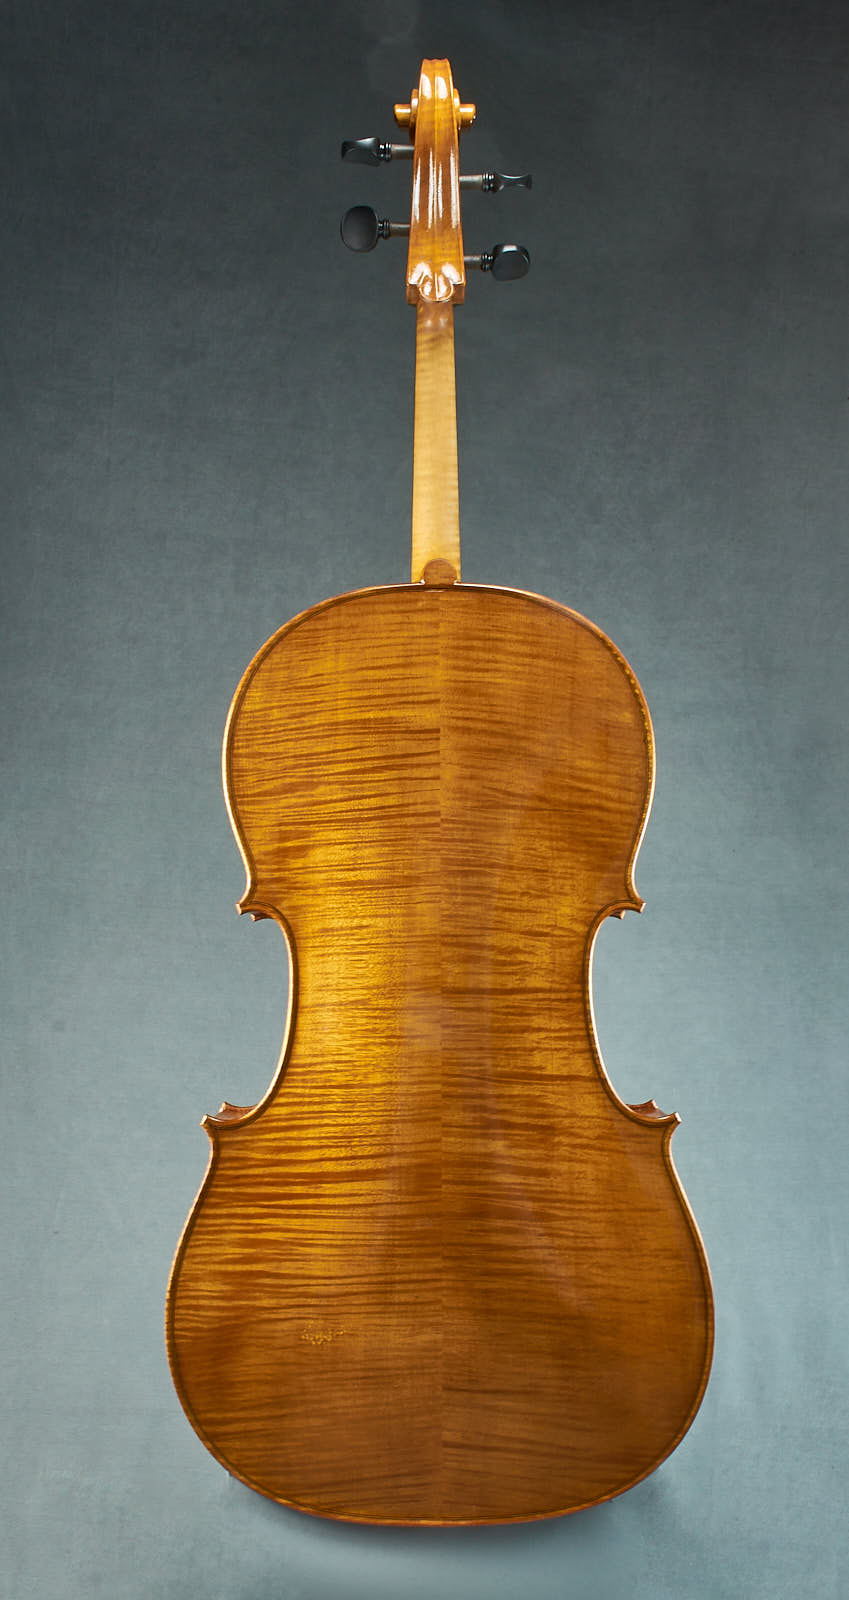 Brazenose Cello Etere back handmade